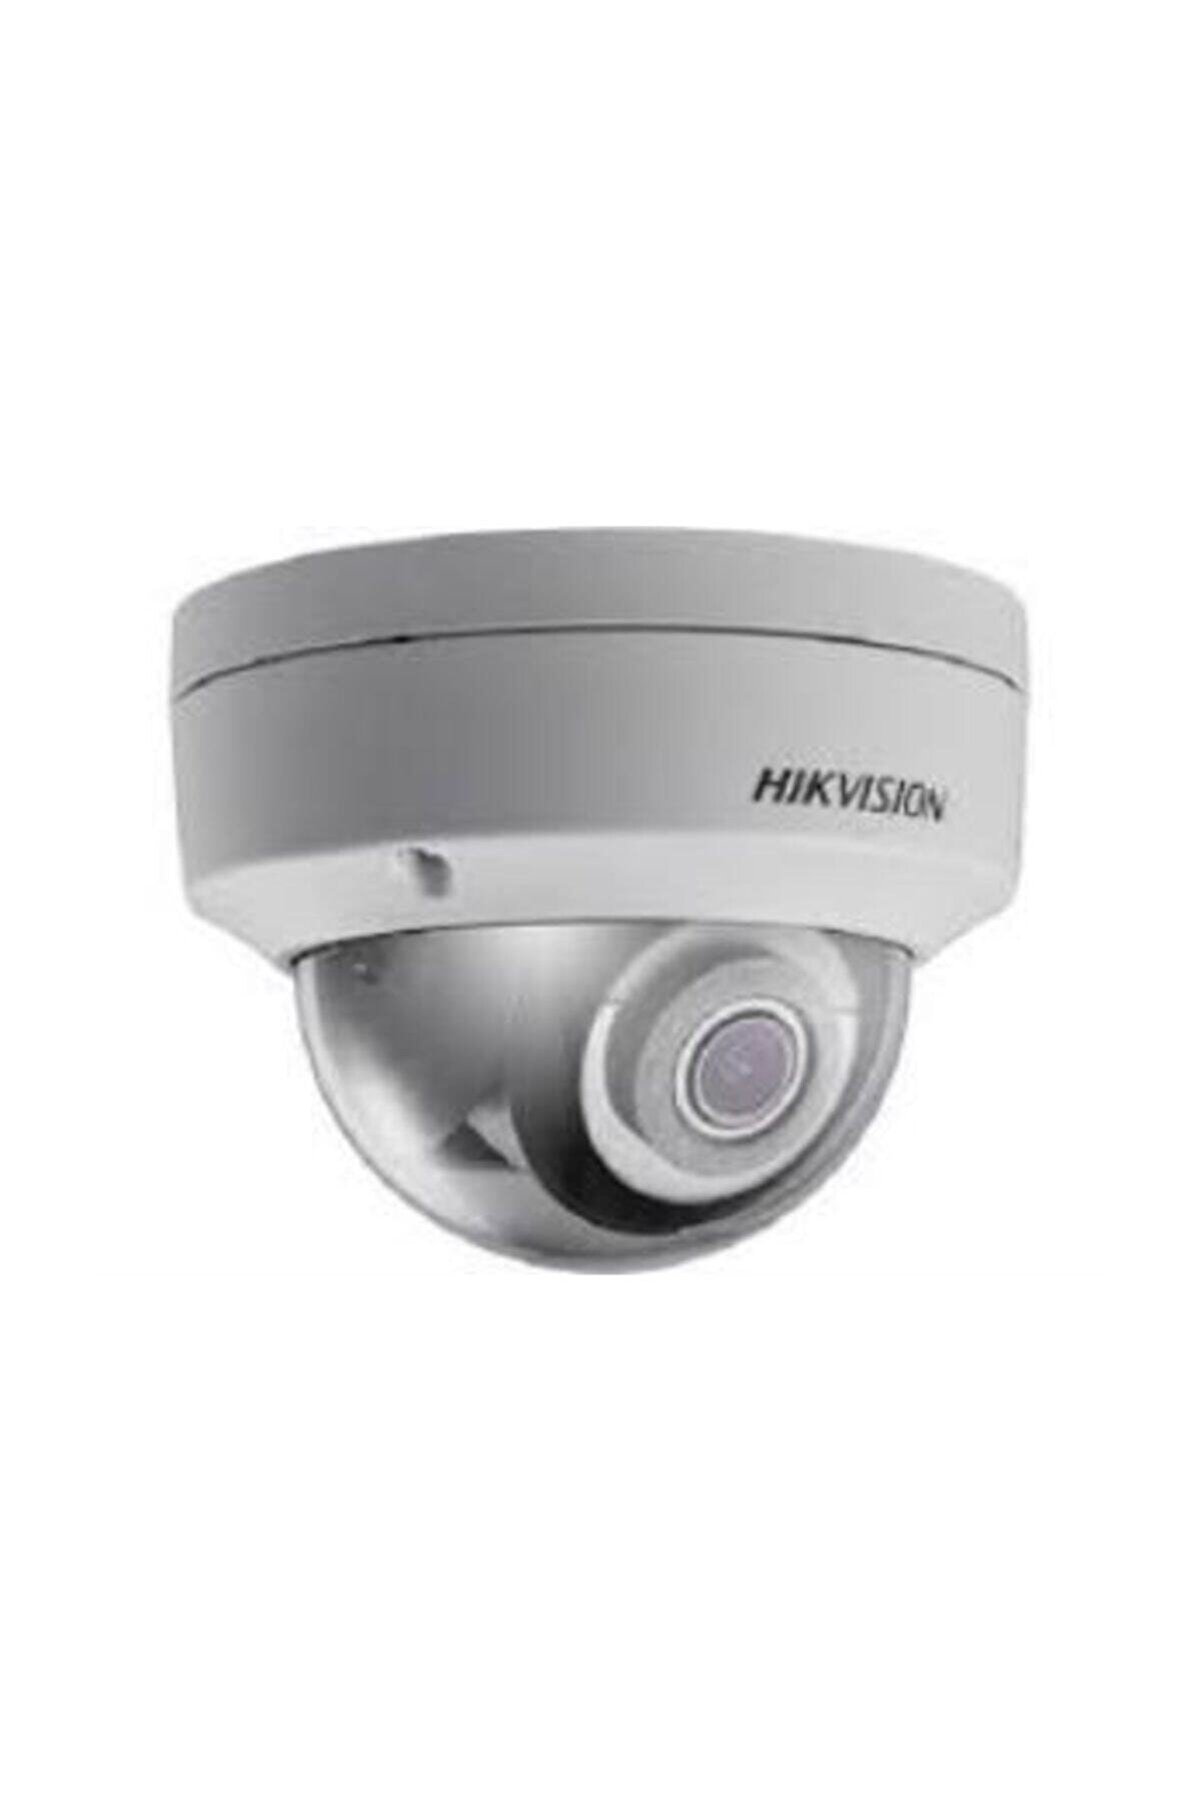 Hikvision Ds-2cd2143g0-ısckv 4 Mp 2.8 Mm Sabit Lensli Exır Dome Ip Kamera